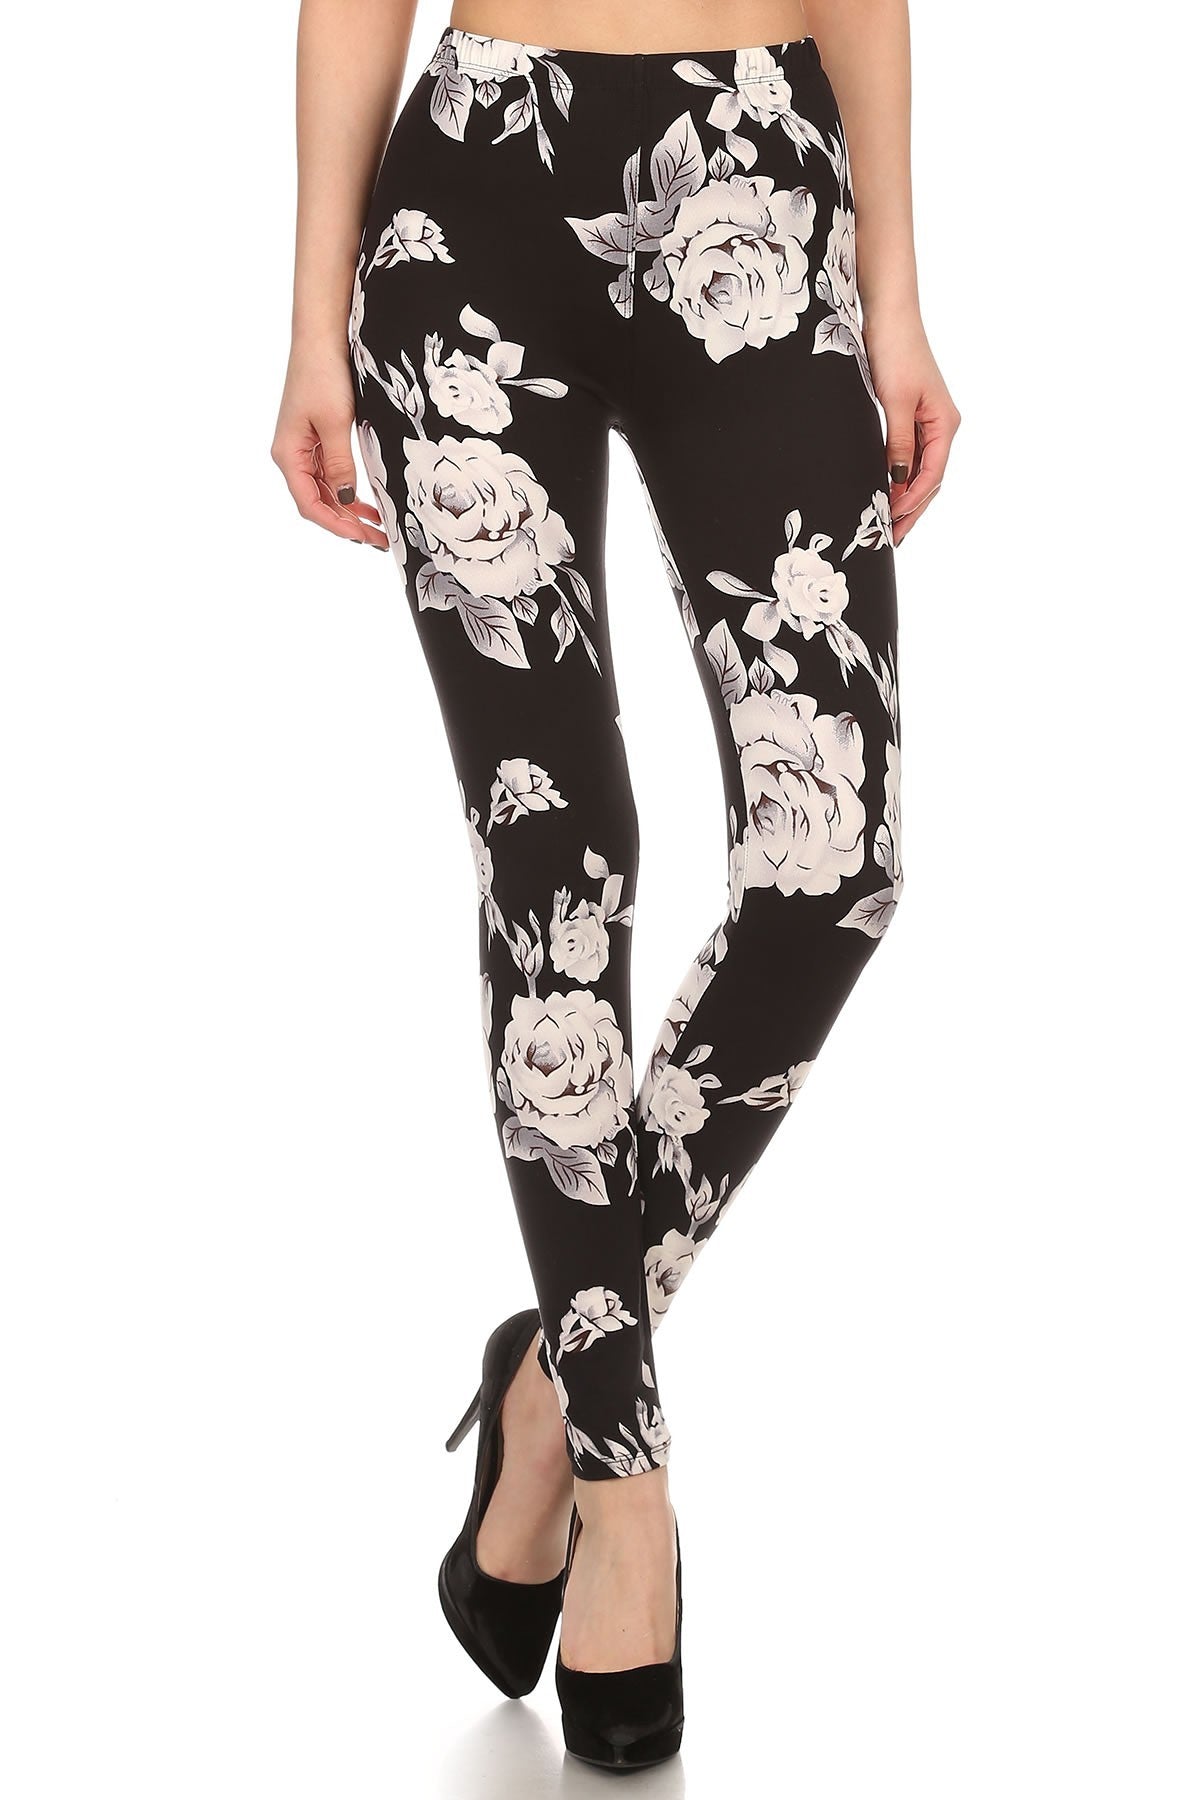 White rose flower black jagging‘s  Womens best leggings BUTTERY SOFT LEGGINGS One Size  Print Natural flower print